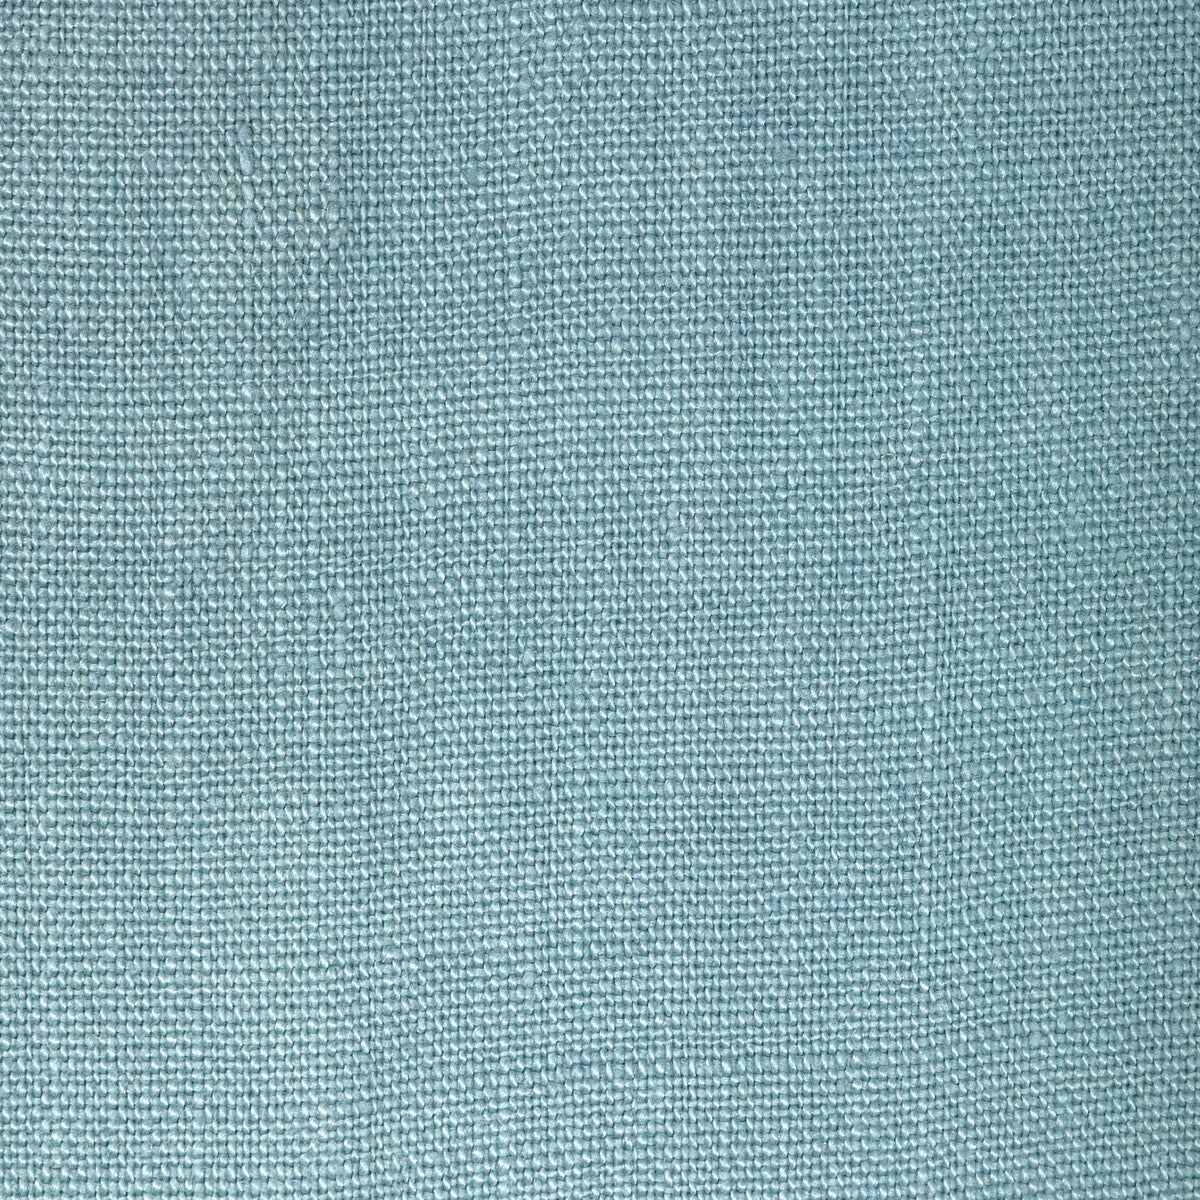 Kravet Basics fabric in 36332-115 color - pattern 36332.115.0 - by Kravet Basics